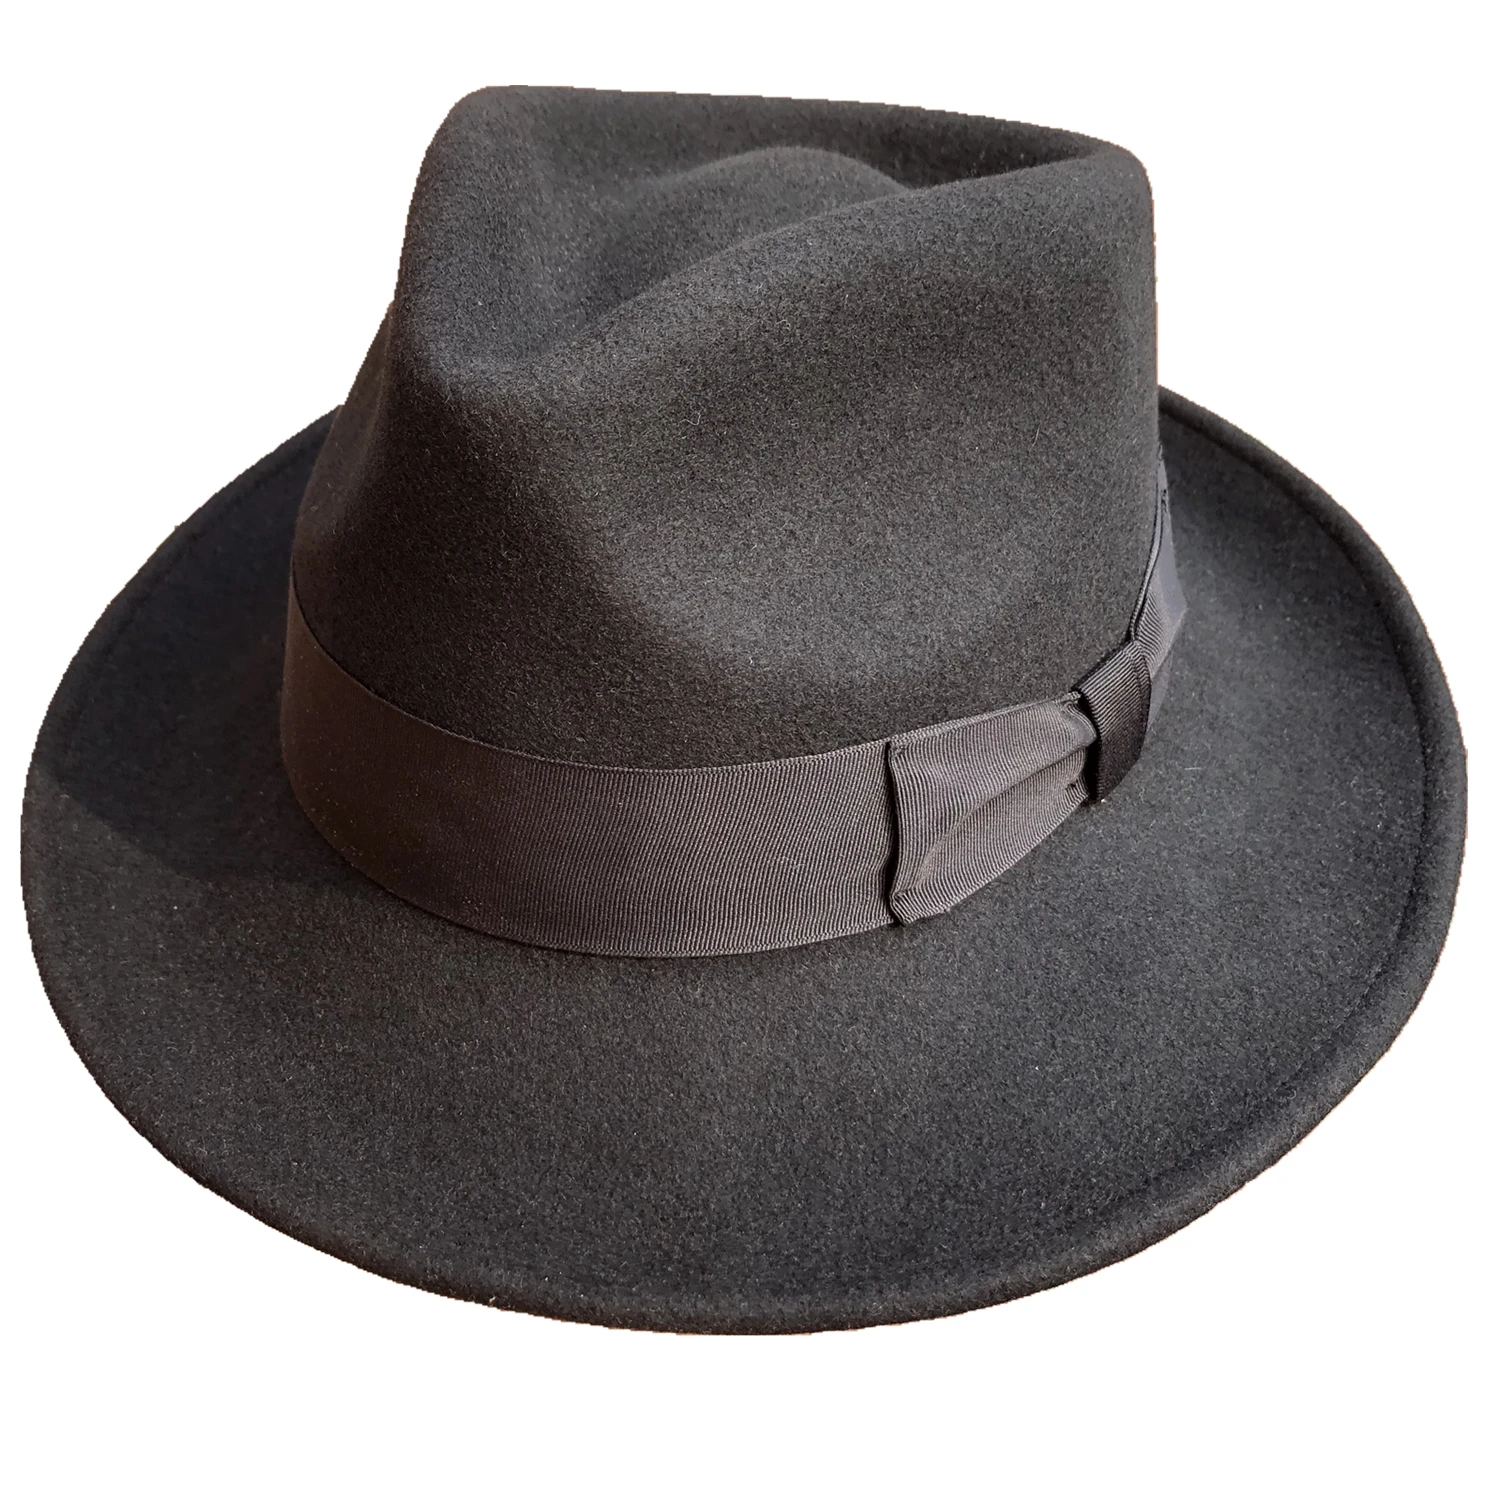 Yün keçe Crushable Packable fötr şapkalar erkekler kadınlar için siyah deve kırmızı renk